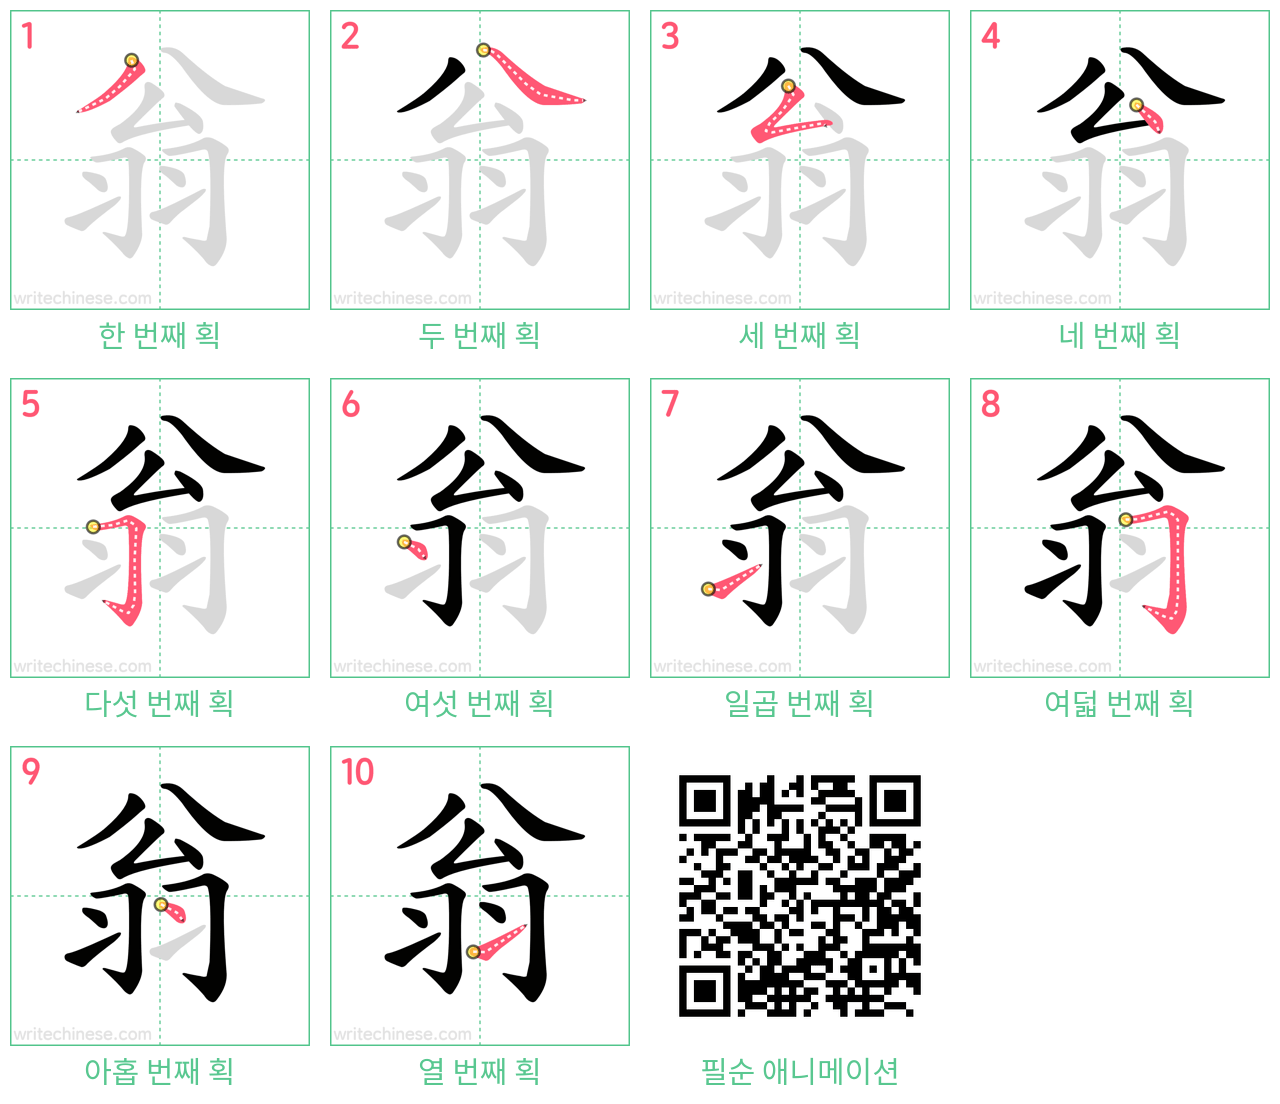 翁 step-by-step stroke order diagrams